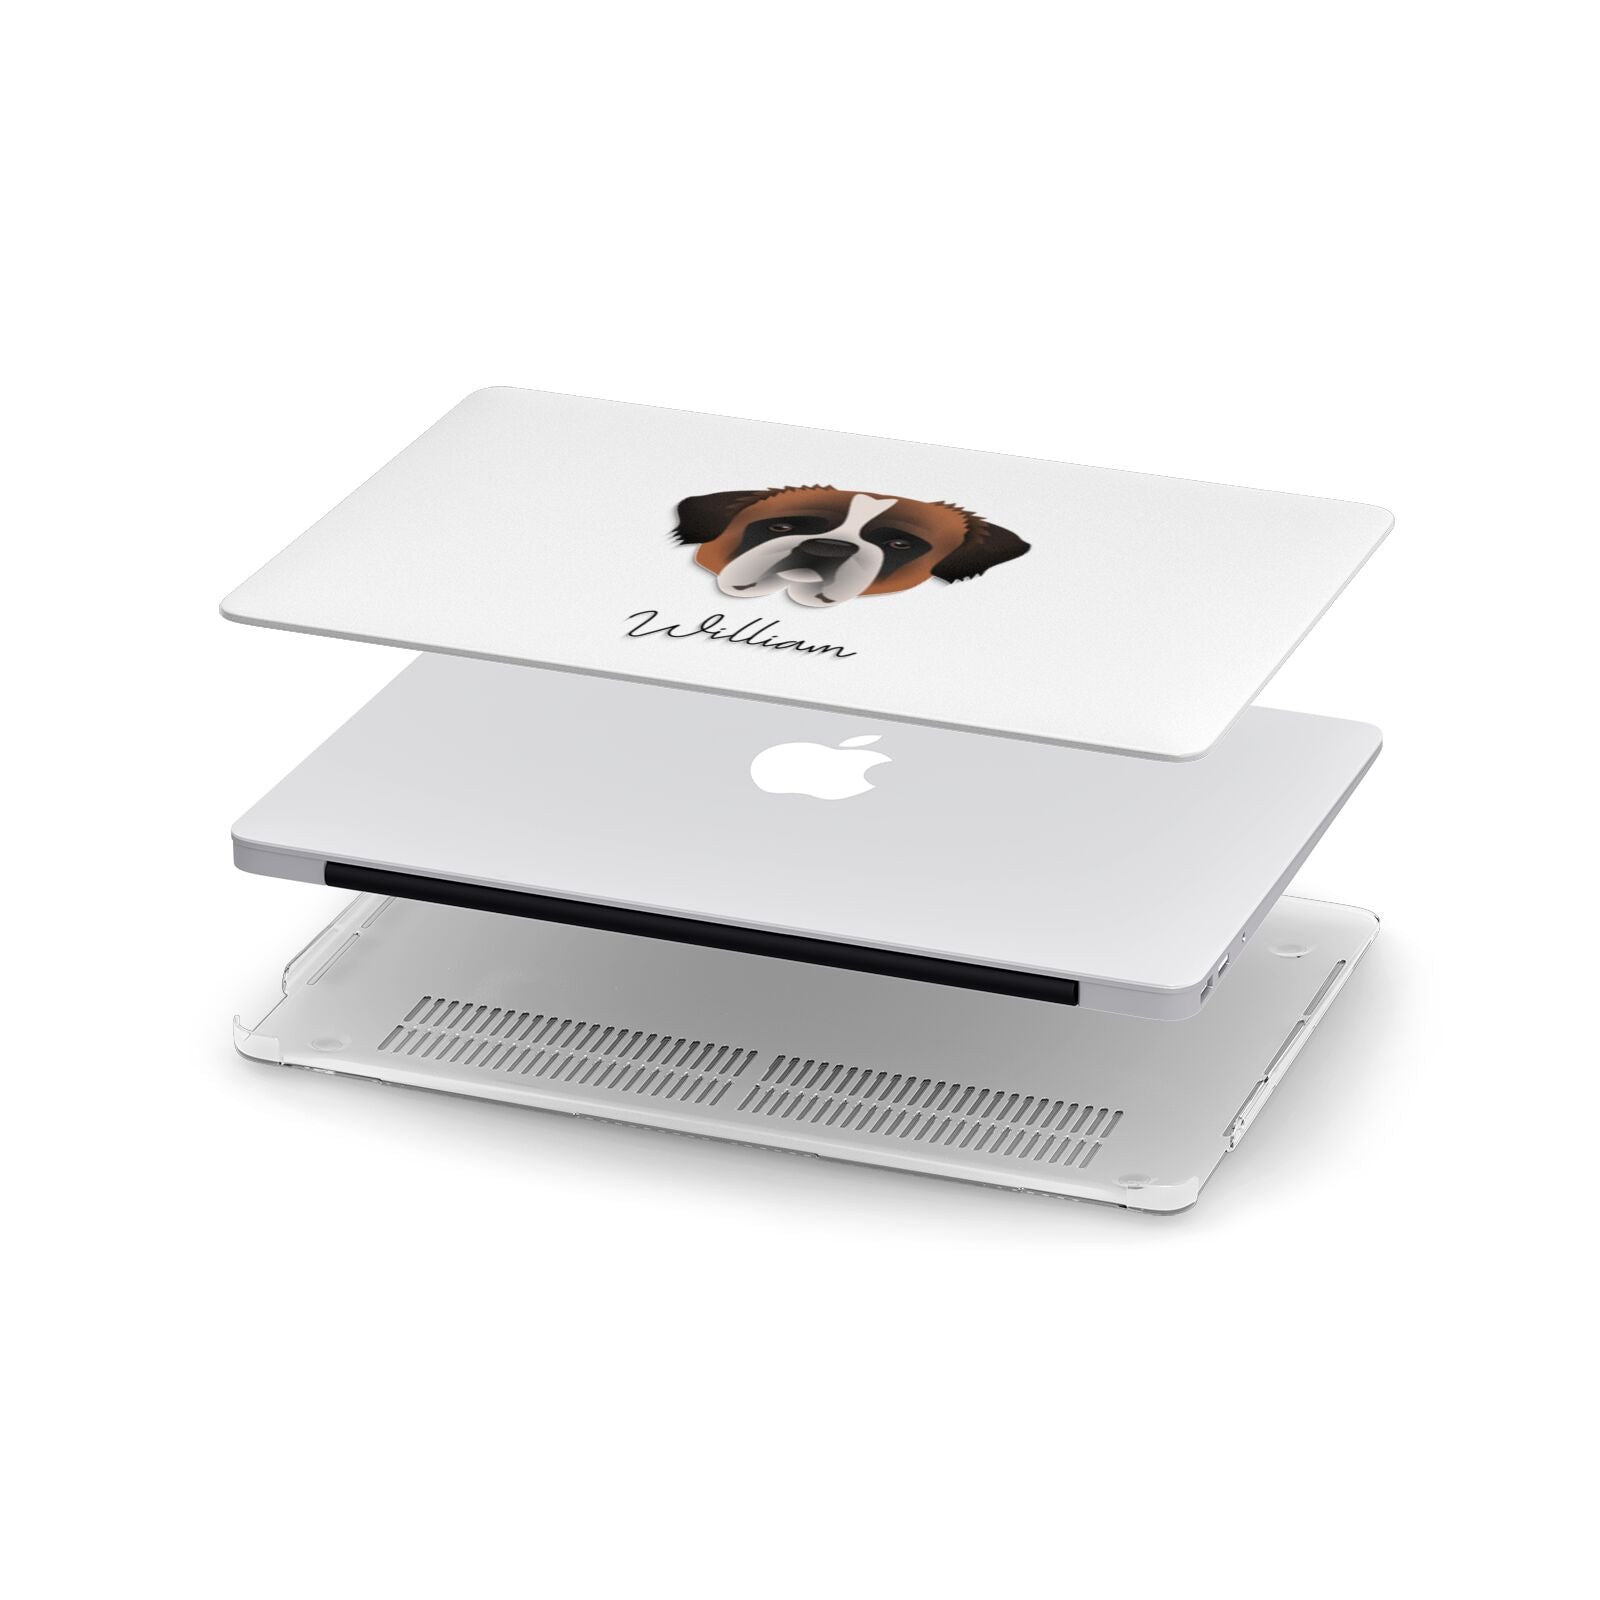 St Bernard Personalised Apple MacBook Case in Detail